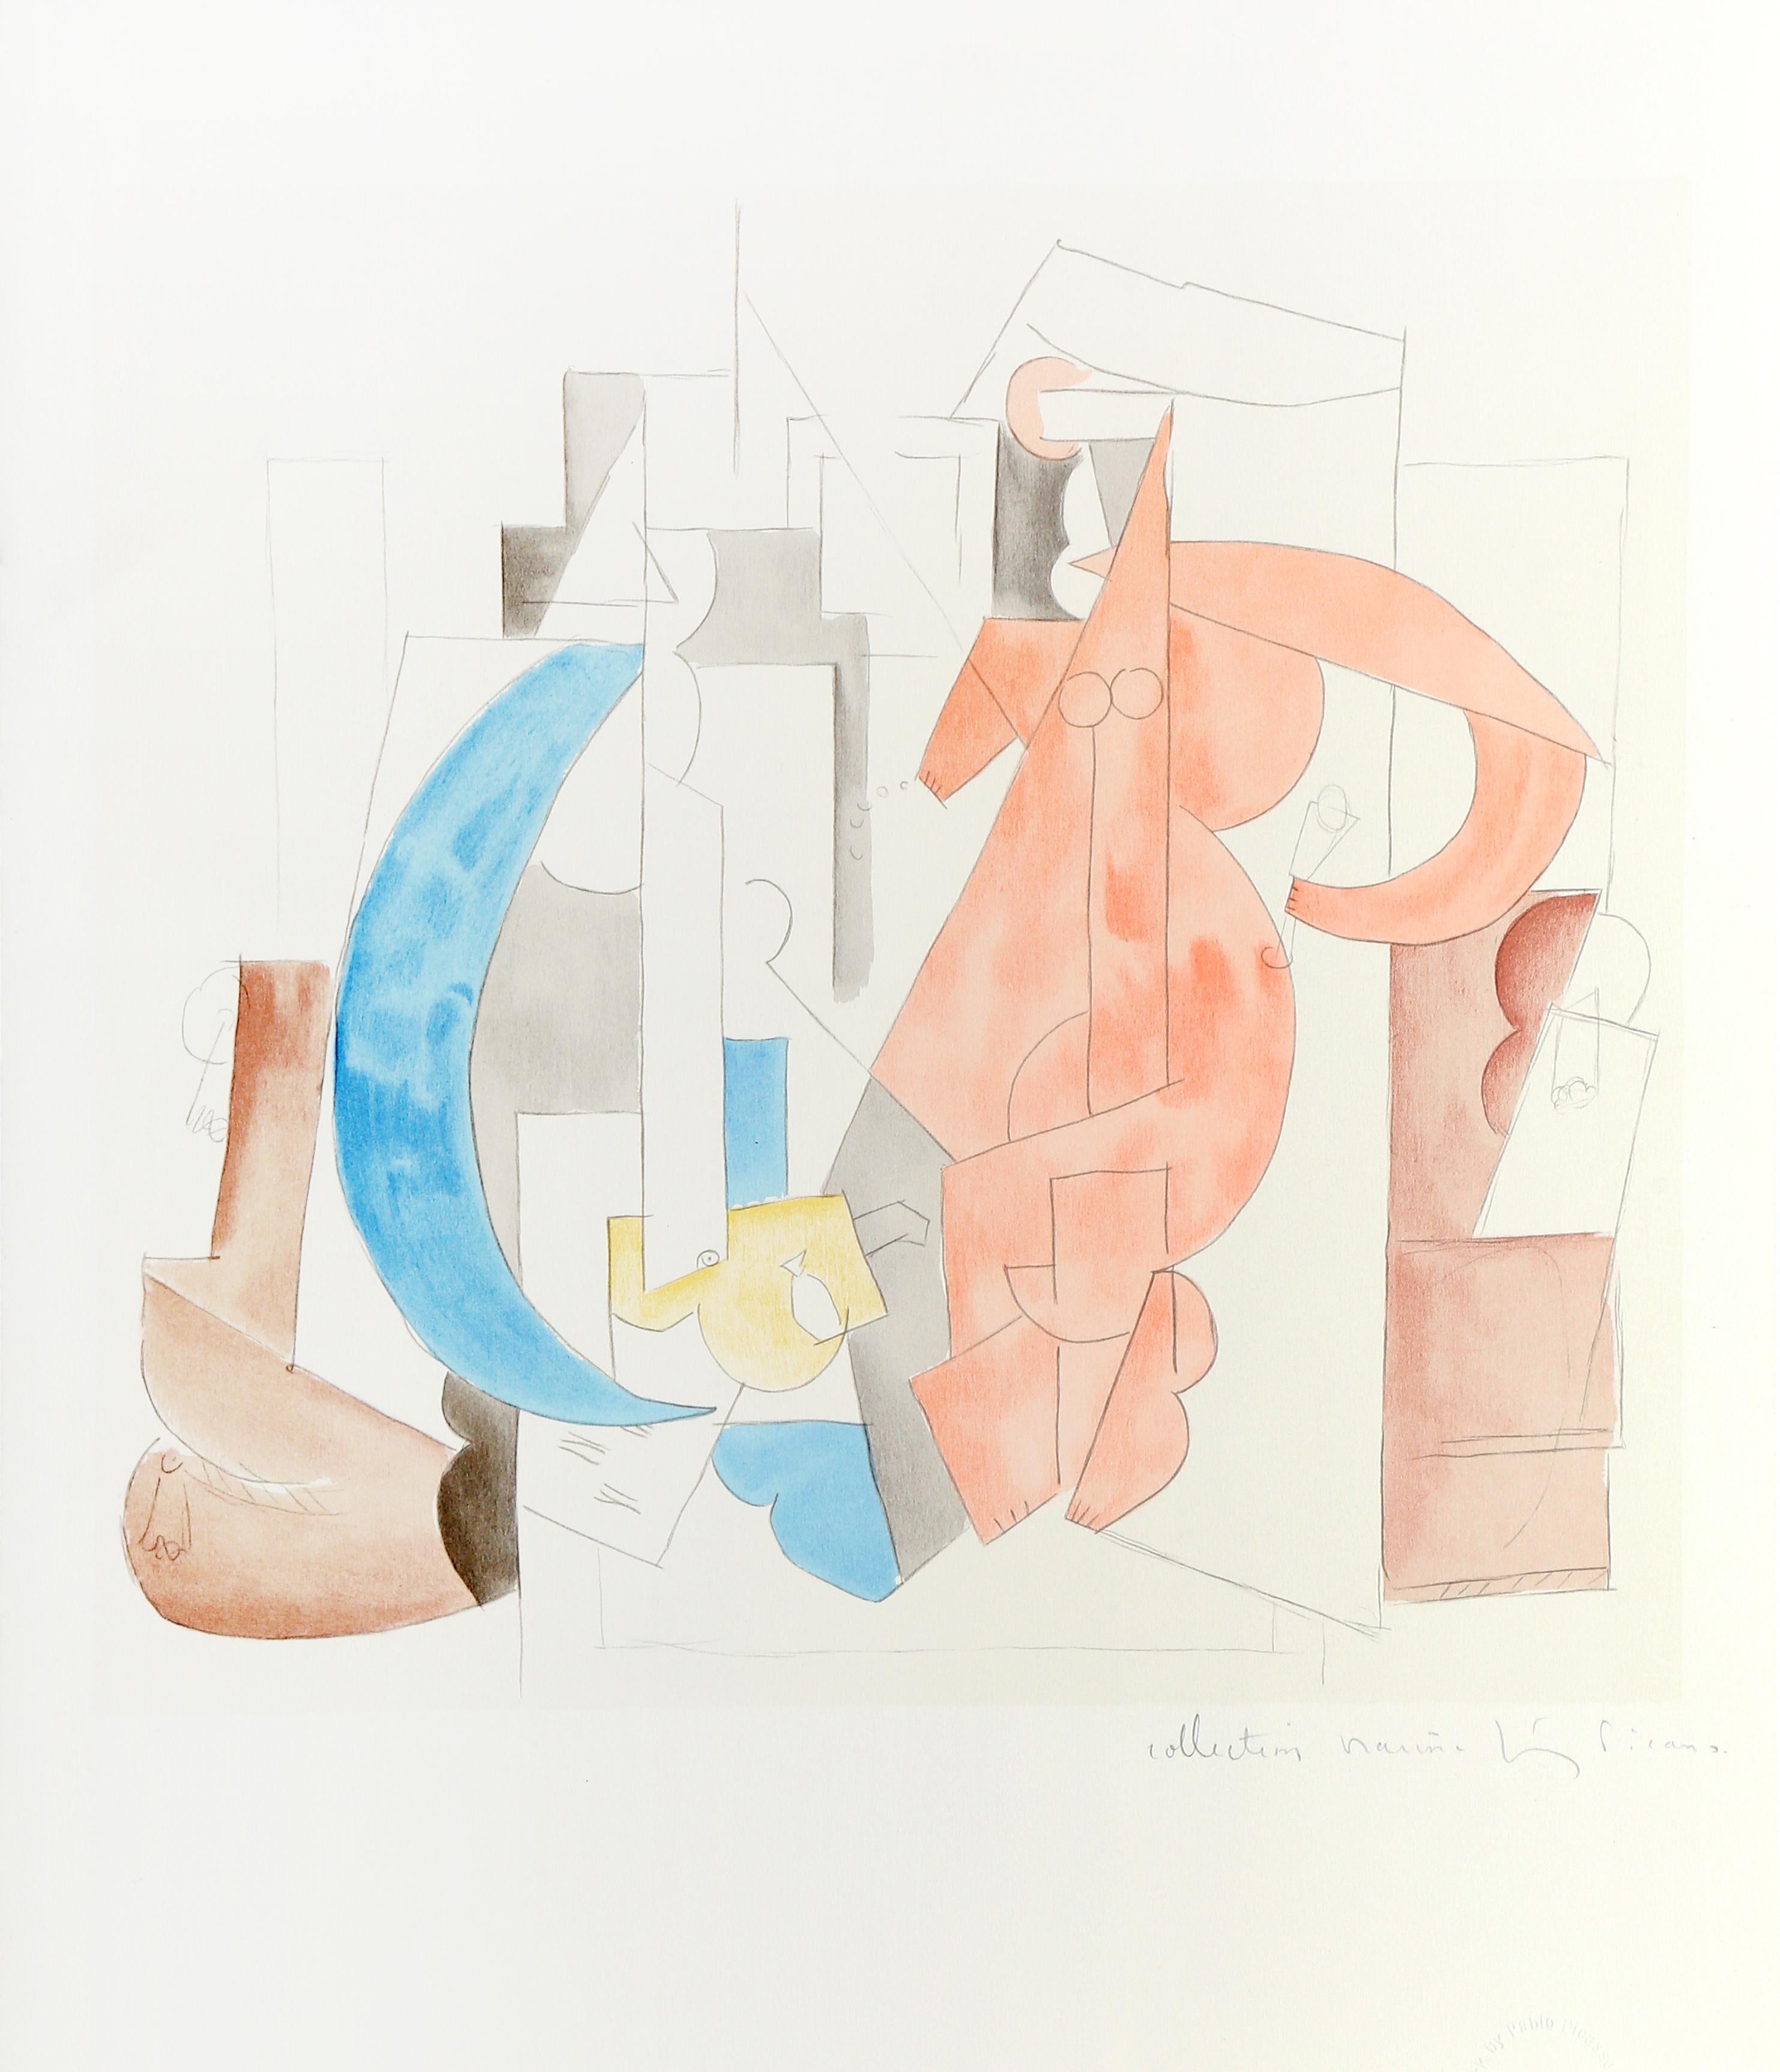 Composée de plusieurs formes, la composition de Pablo Picasso illustre sa manipulation de la forme pour produire de nouvelles perspectives et vues de ses sujets qui seraient autrement invisibles. Une lithographie provenant de la Collection SALE de